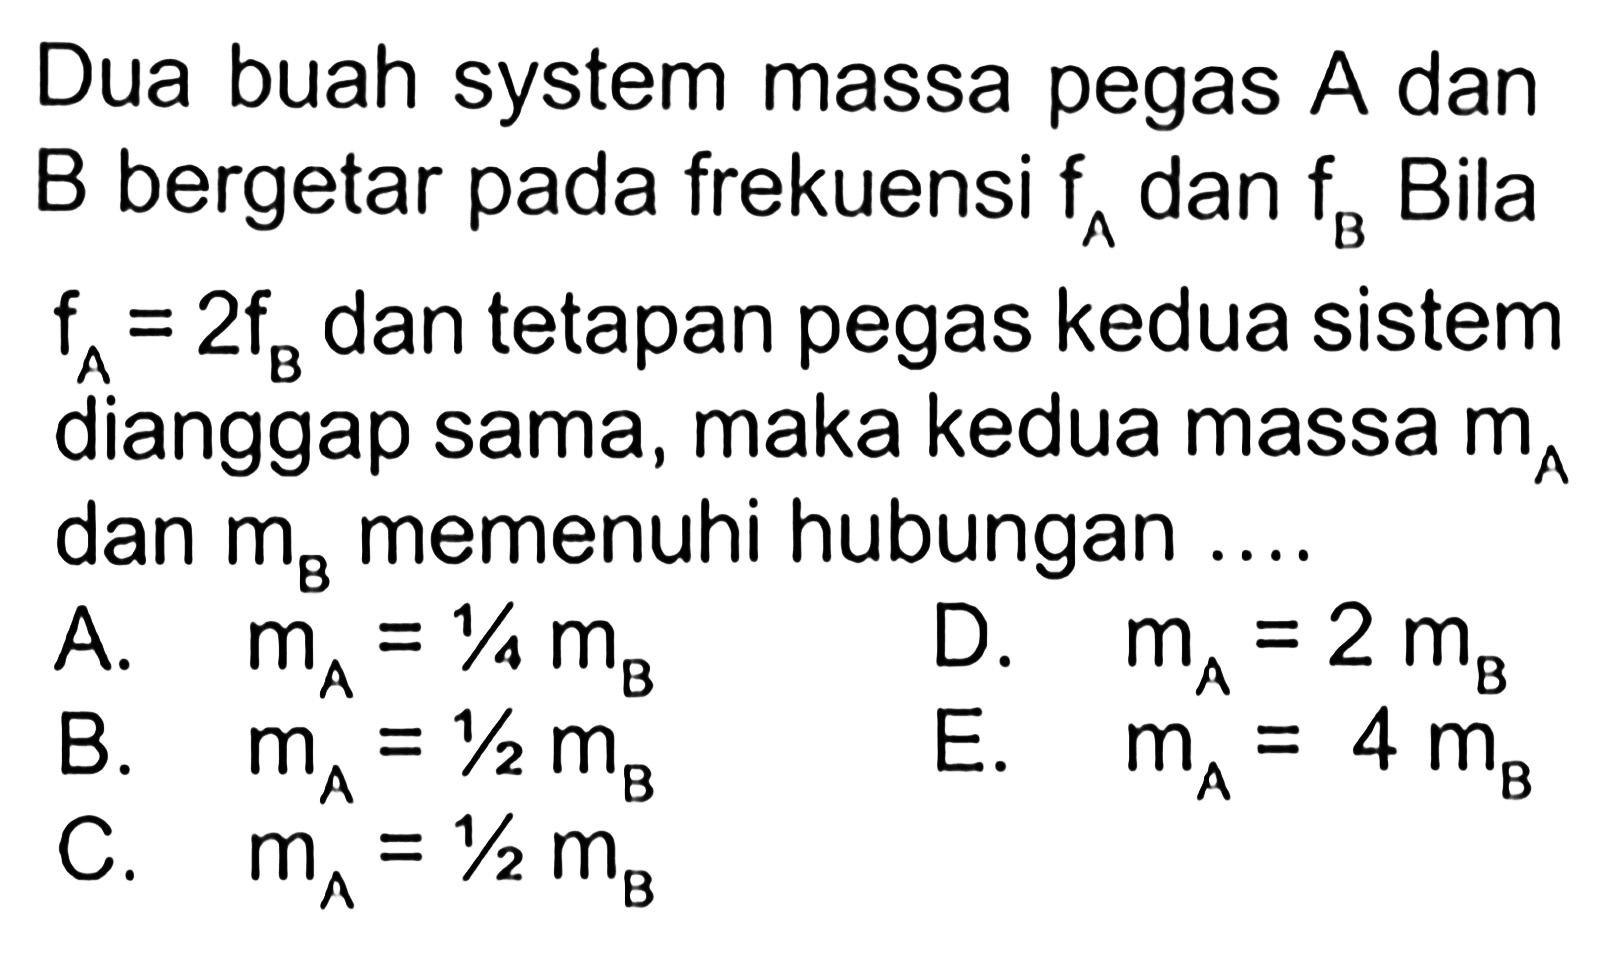 Dua buah system massa pegas A dan B bergetar pada frekuensi fa dan fb. Bila fa = 2fb dan tetapan pegas kedua sistem dianggap sama, maka kedua massa dan mb memenuhi hubungan